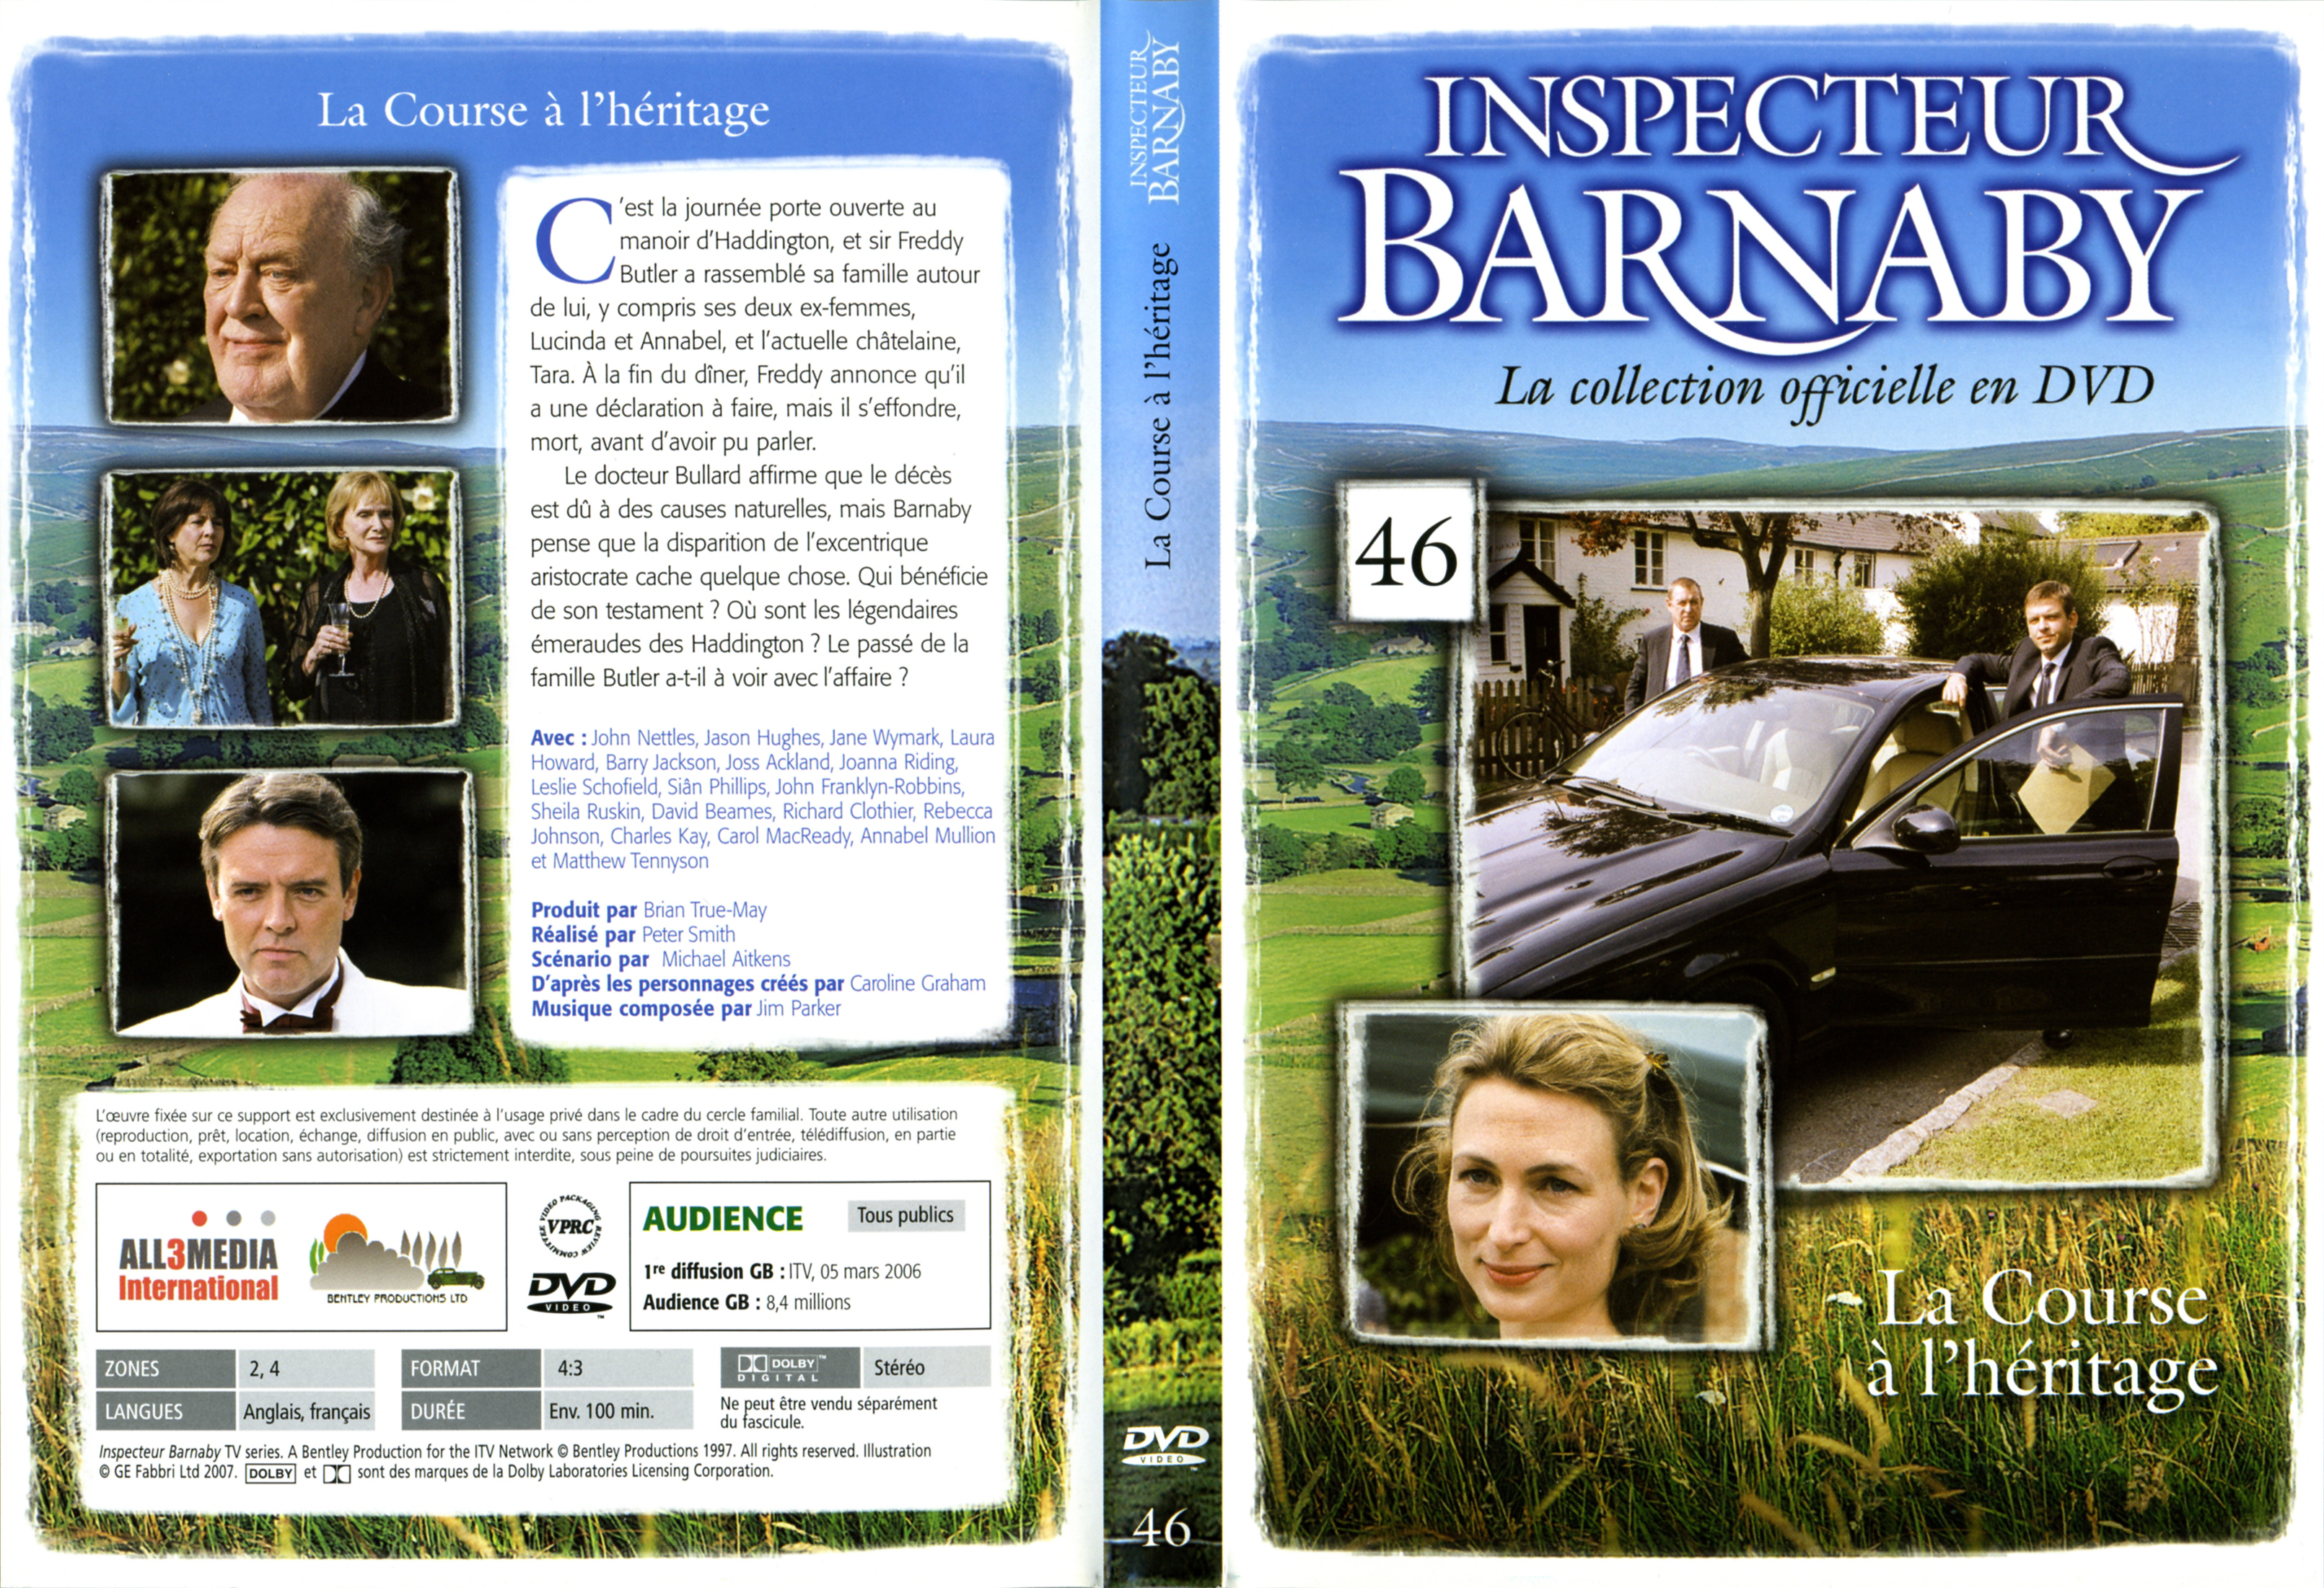 Jaquette DVD Barnaby vol 46 - La Course  l